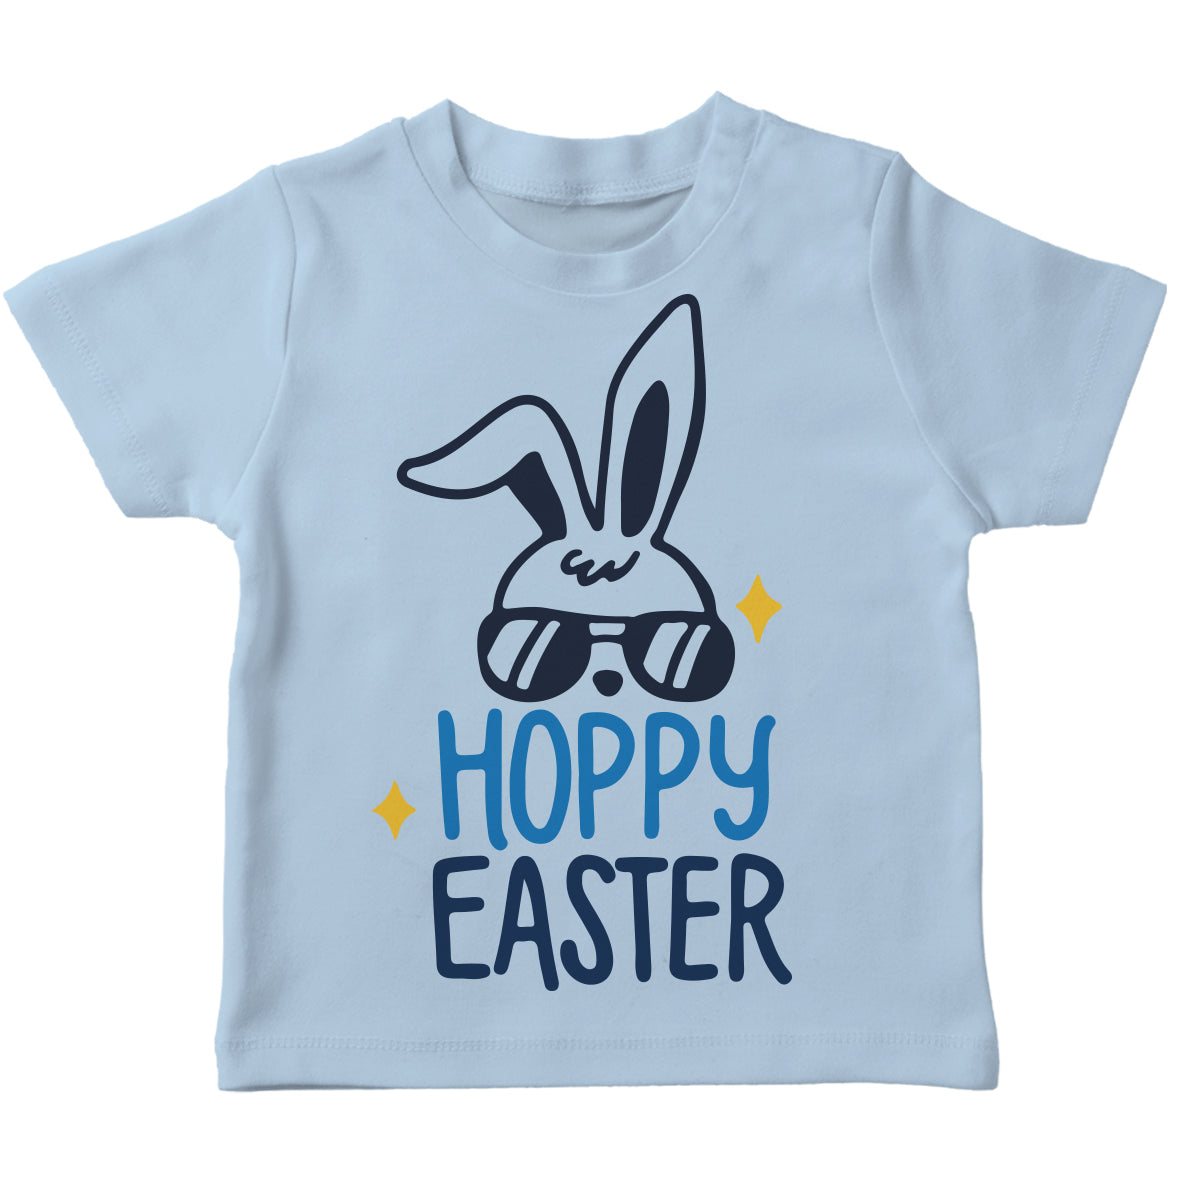 Hoppy Easter Light Blue Short Sleeve - Wimziy&Co.